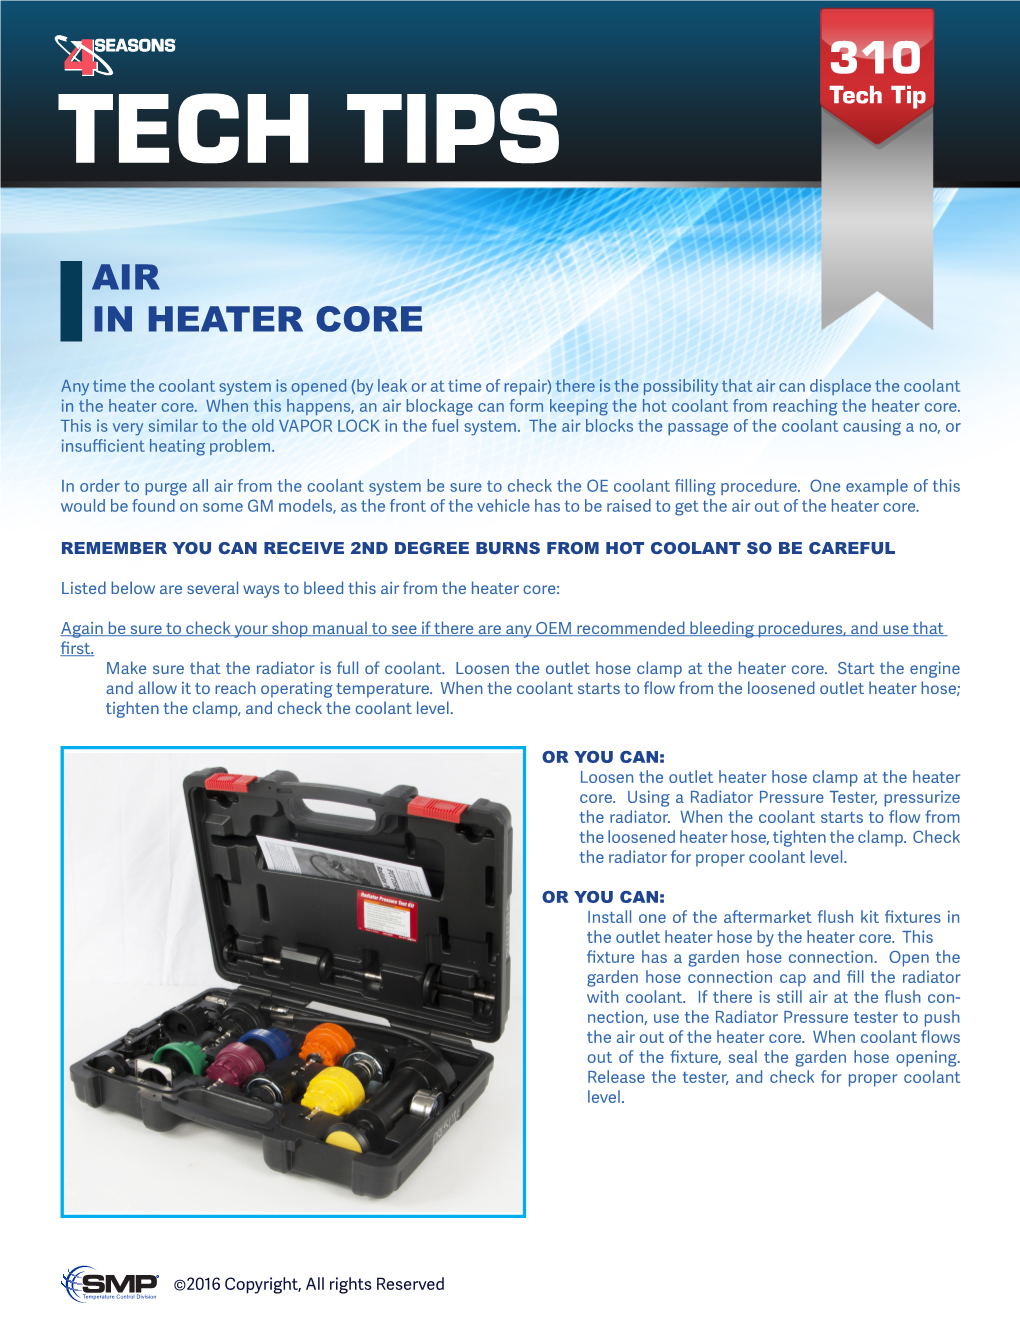 Air in Heater Core